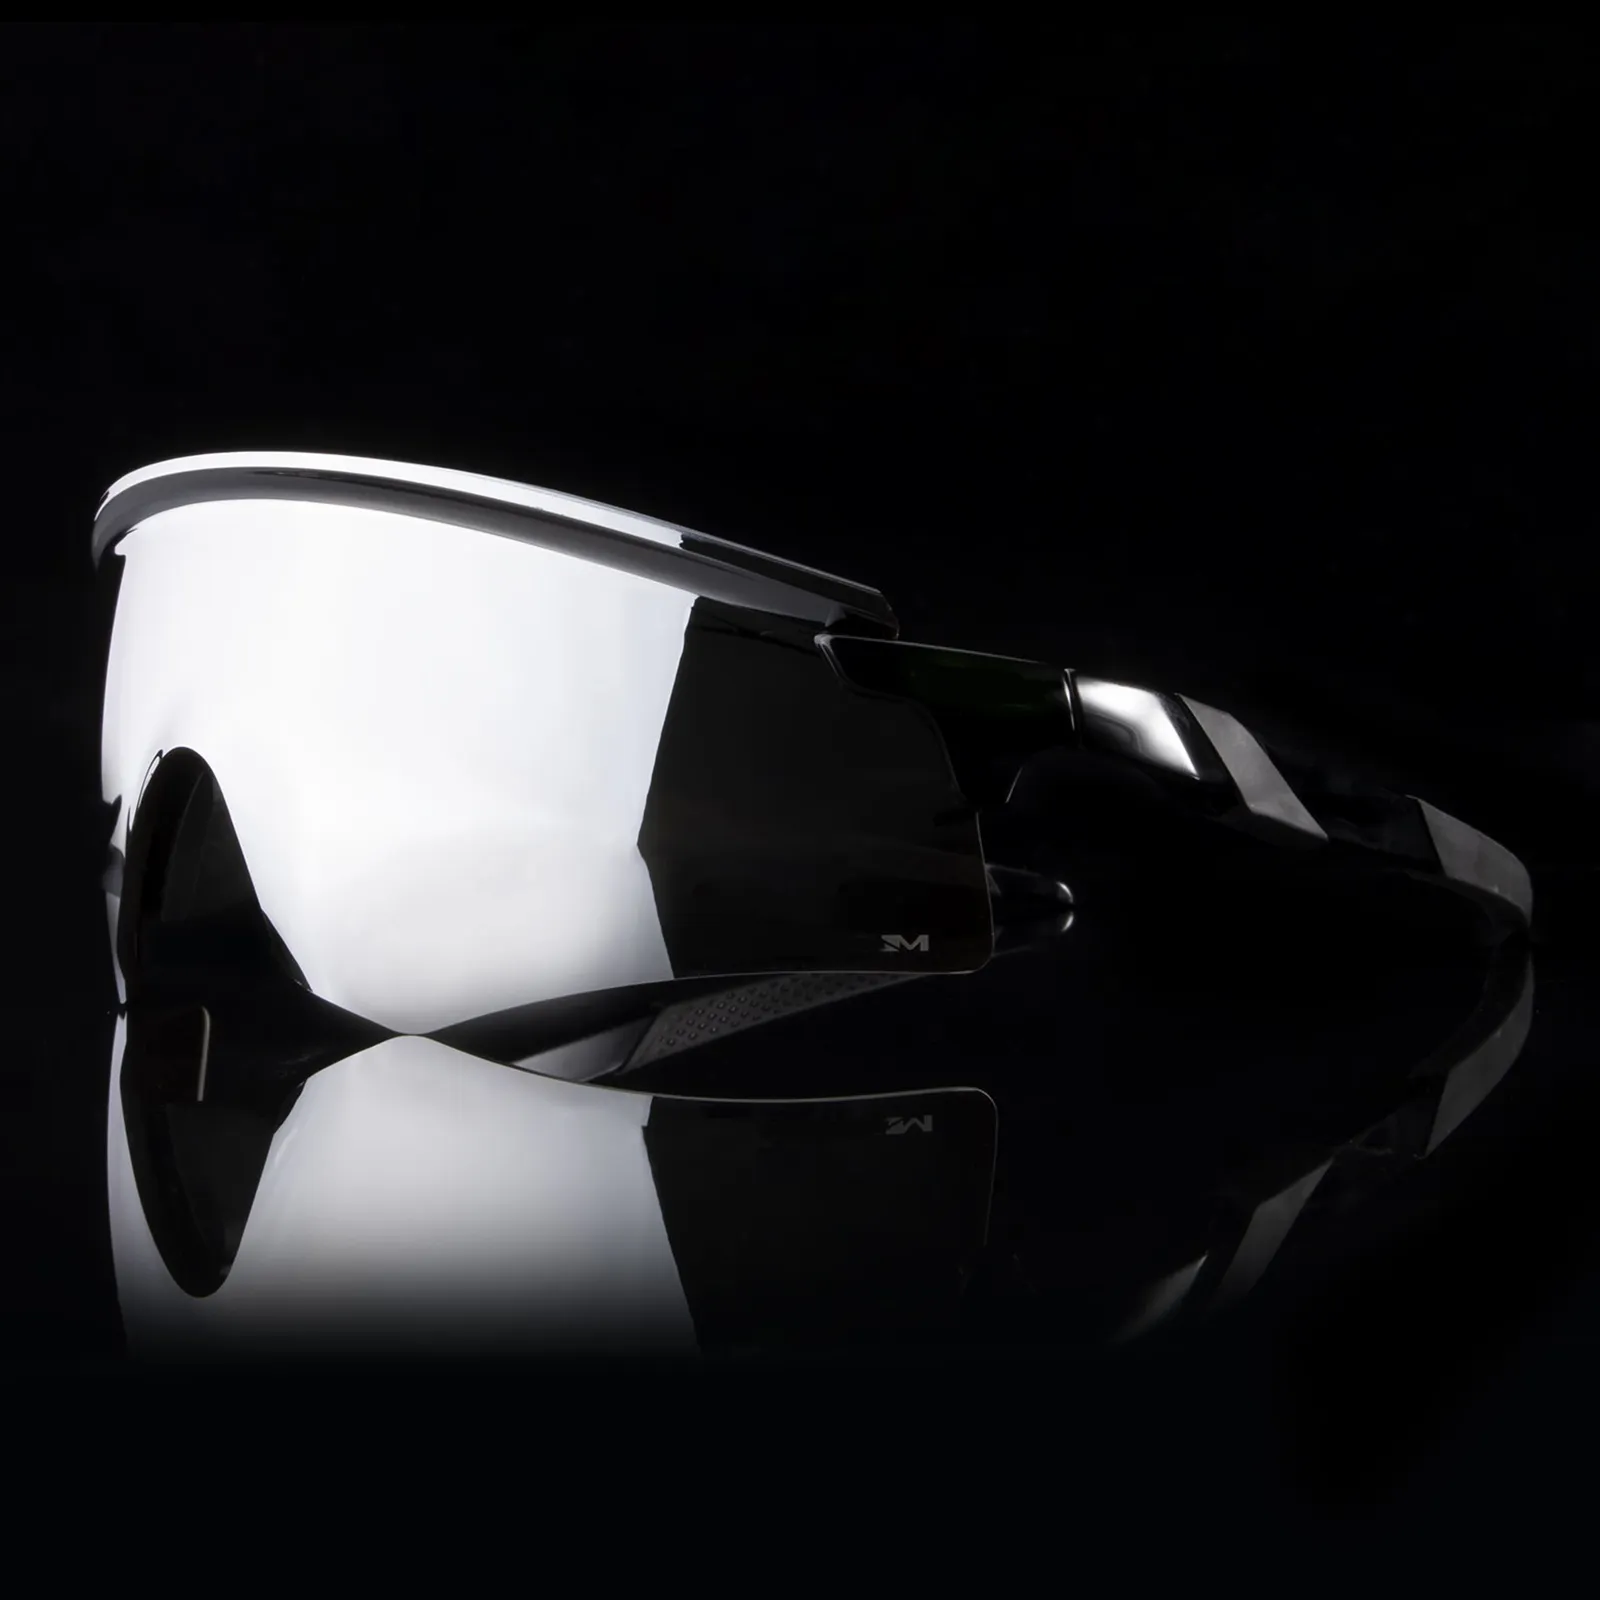 Brand Sonnenbrille Maske Design Rahmen UV400 Sport Encoder Eyewear Frauen Mode Brille Modell 9471 mit Hard Case5888913